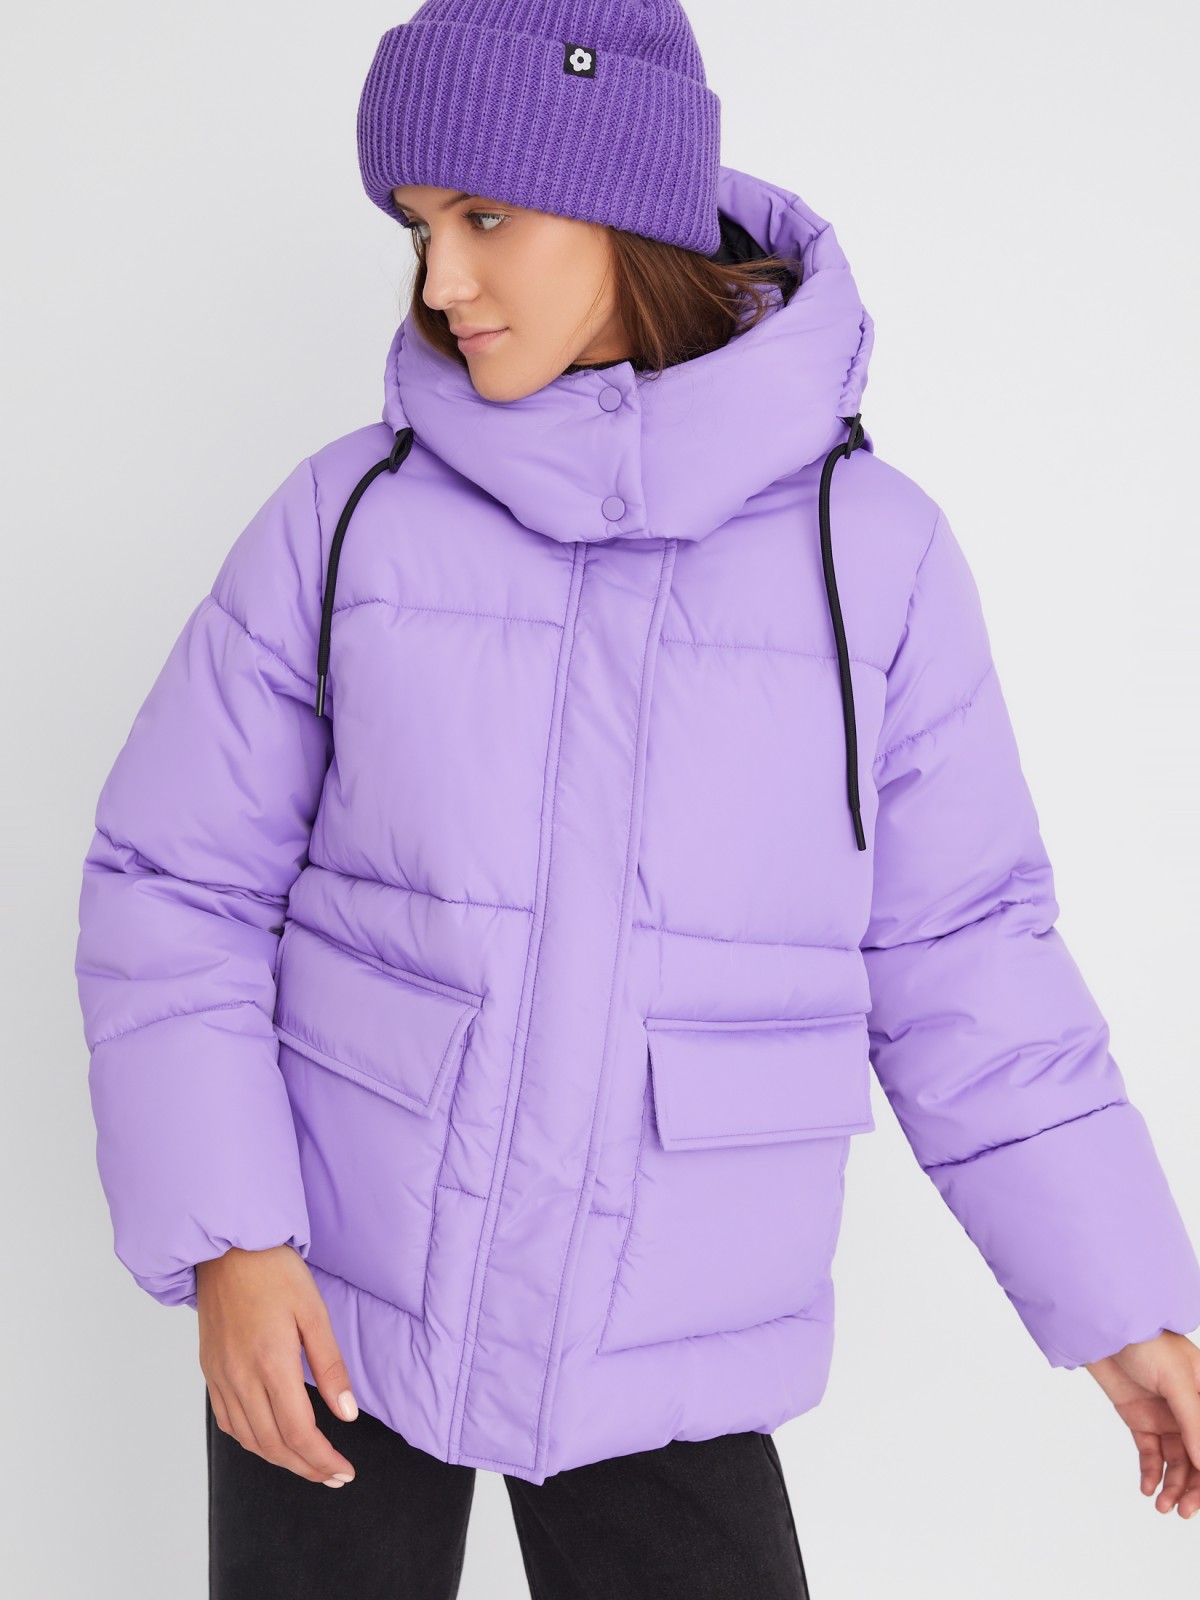 Тёплая дутая стёганая куртка с капюшоном и двойным воротником zolla 023345112104, цвет фиолетовый, размер XS - фото 3